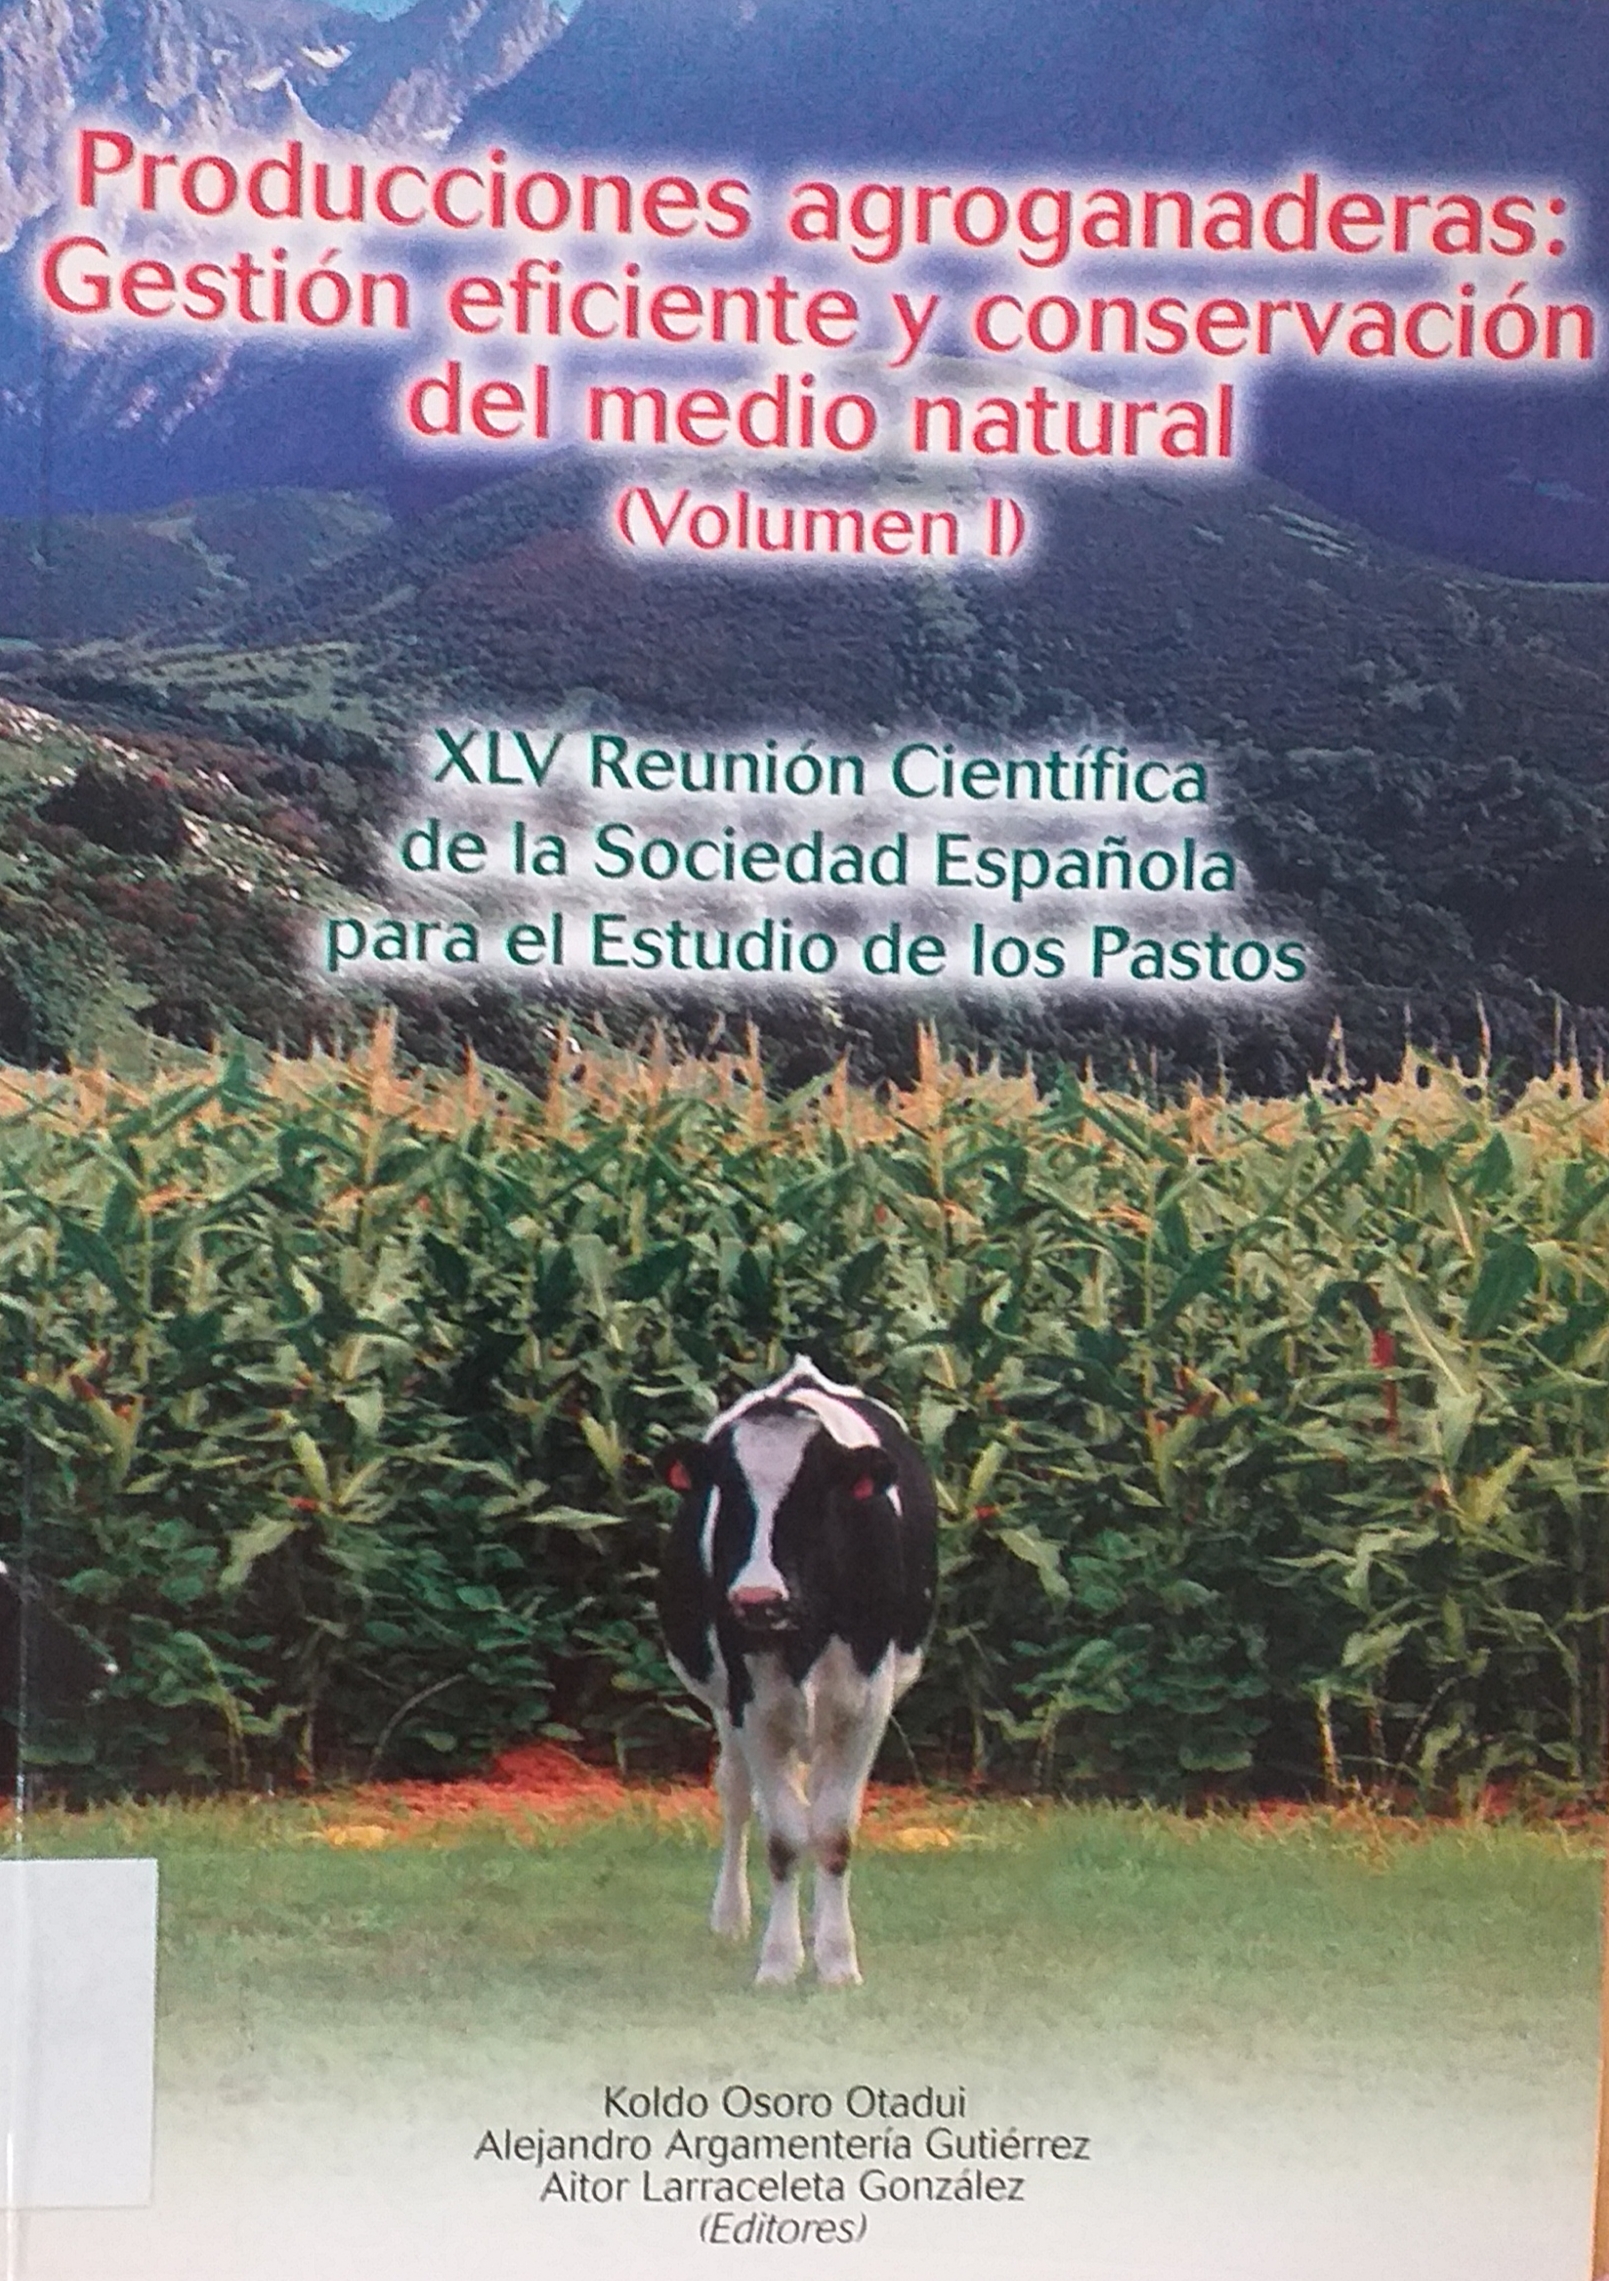 Imagen de portada del libro Producciones agroganaderas